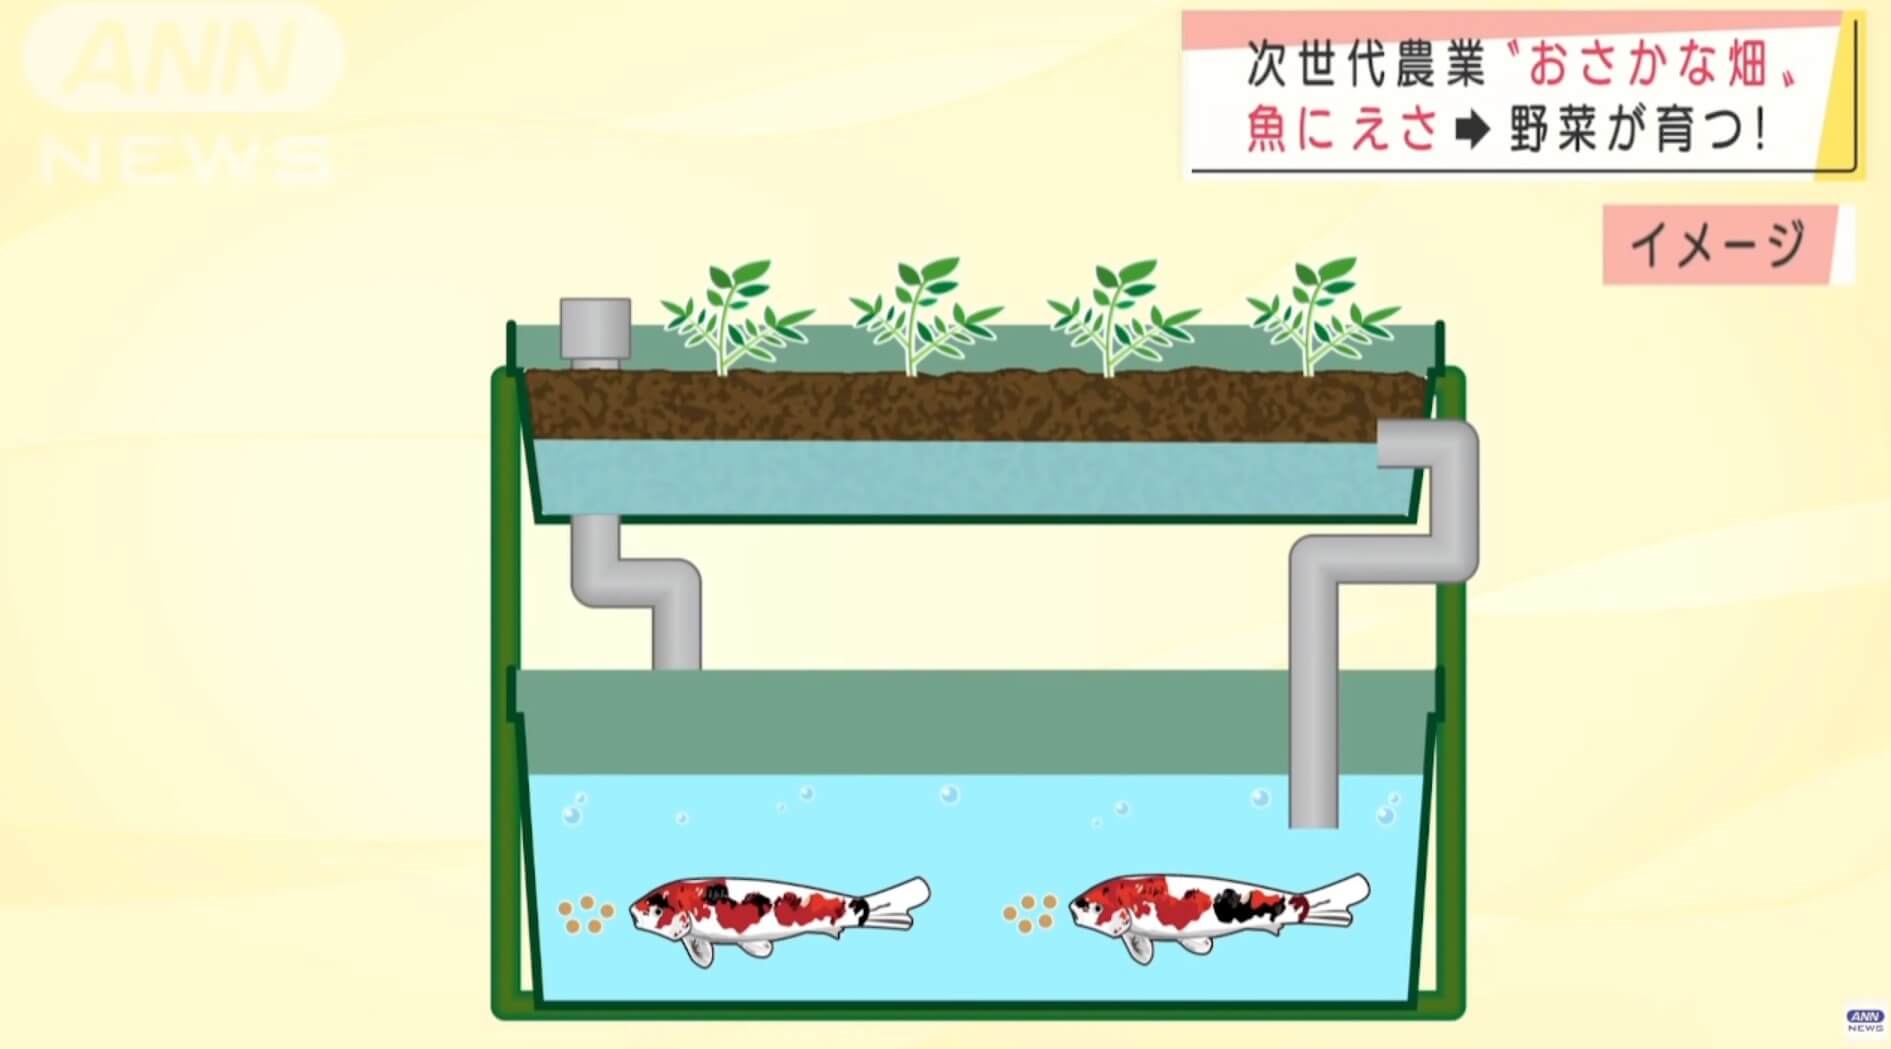 Surge o cultivo de vegetais e peixes no Japão